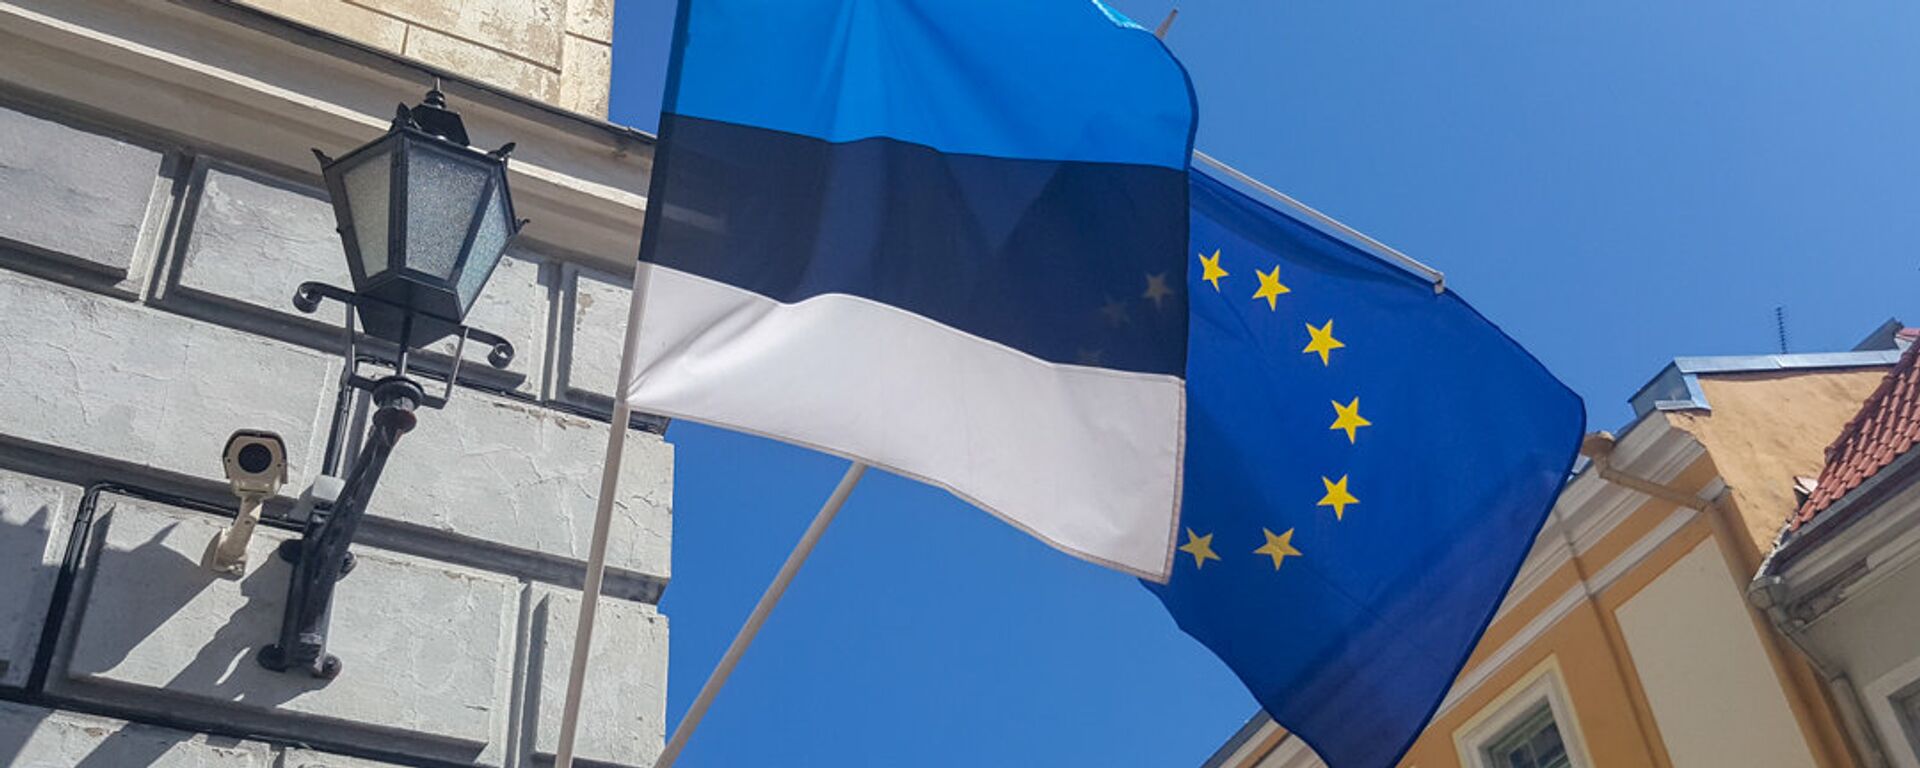 Флаги ЕС и Эстонии - Sputnik Латвия, 1920, 20.12.2021